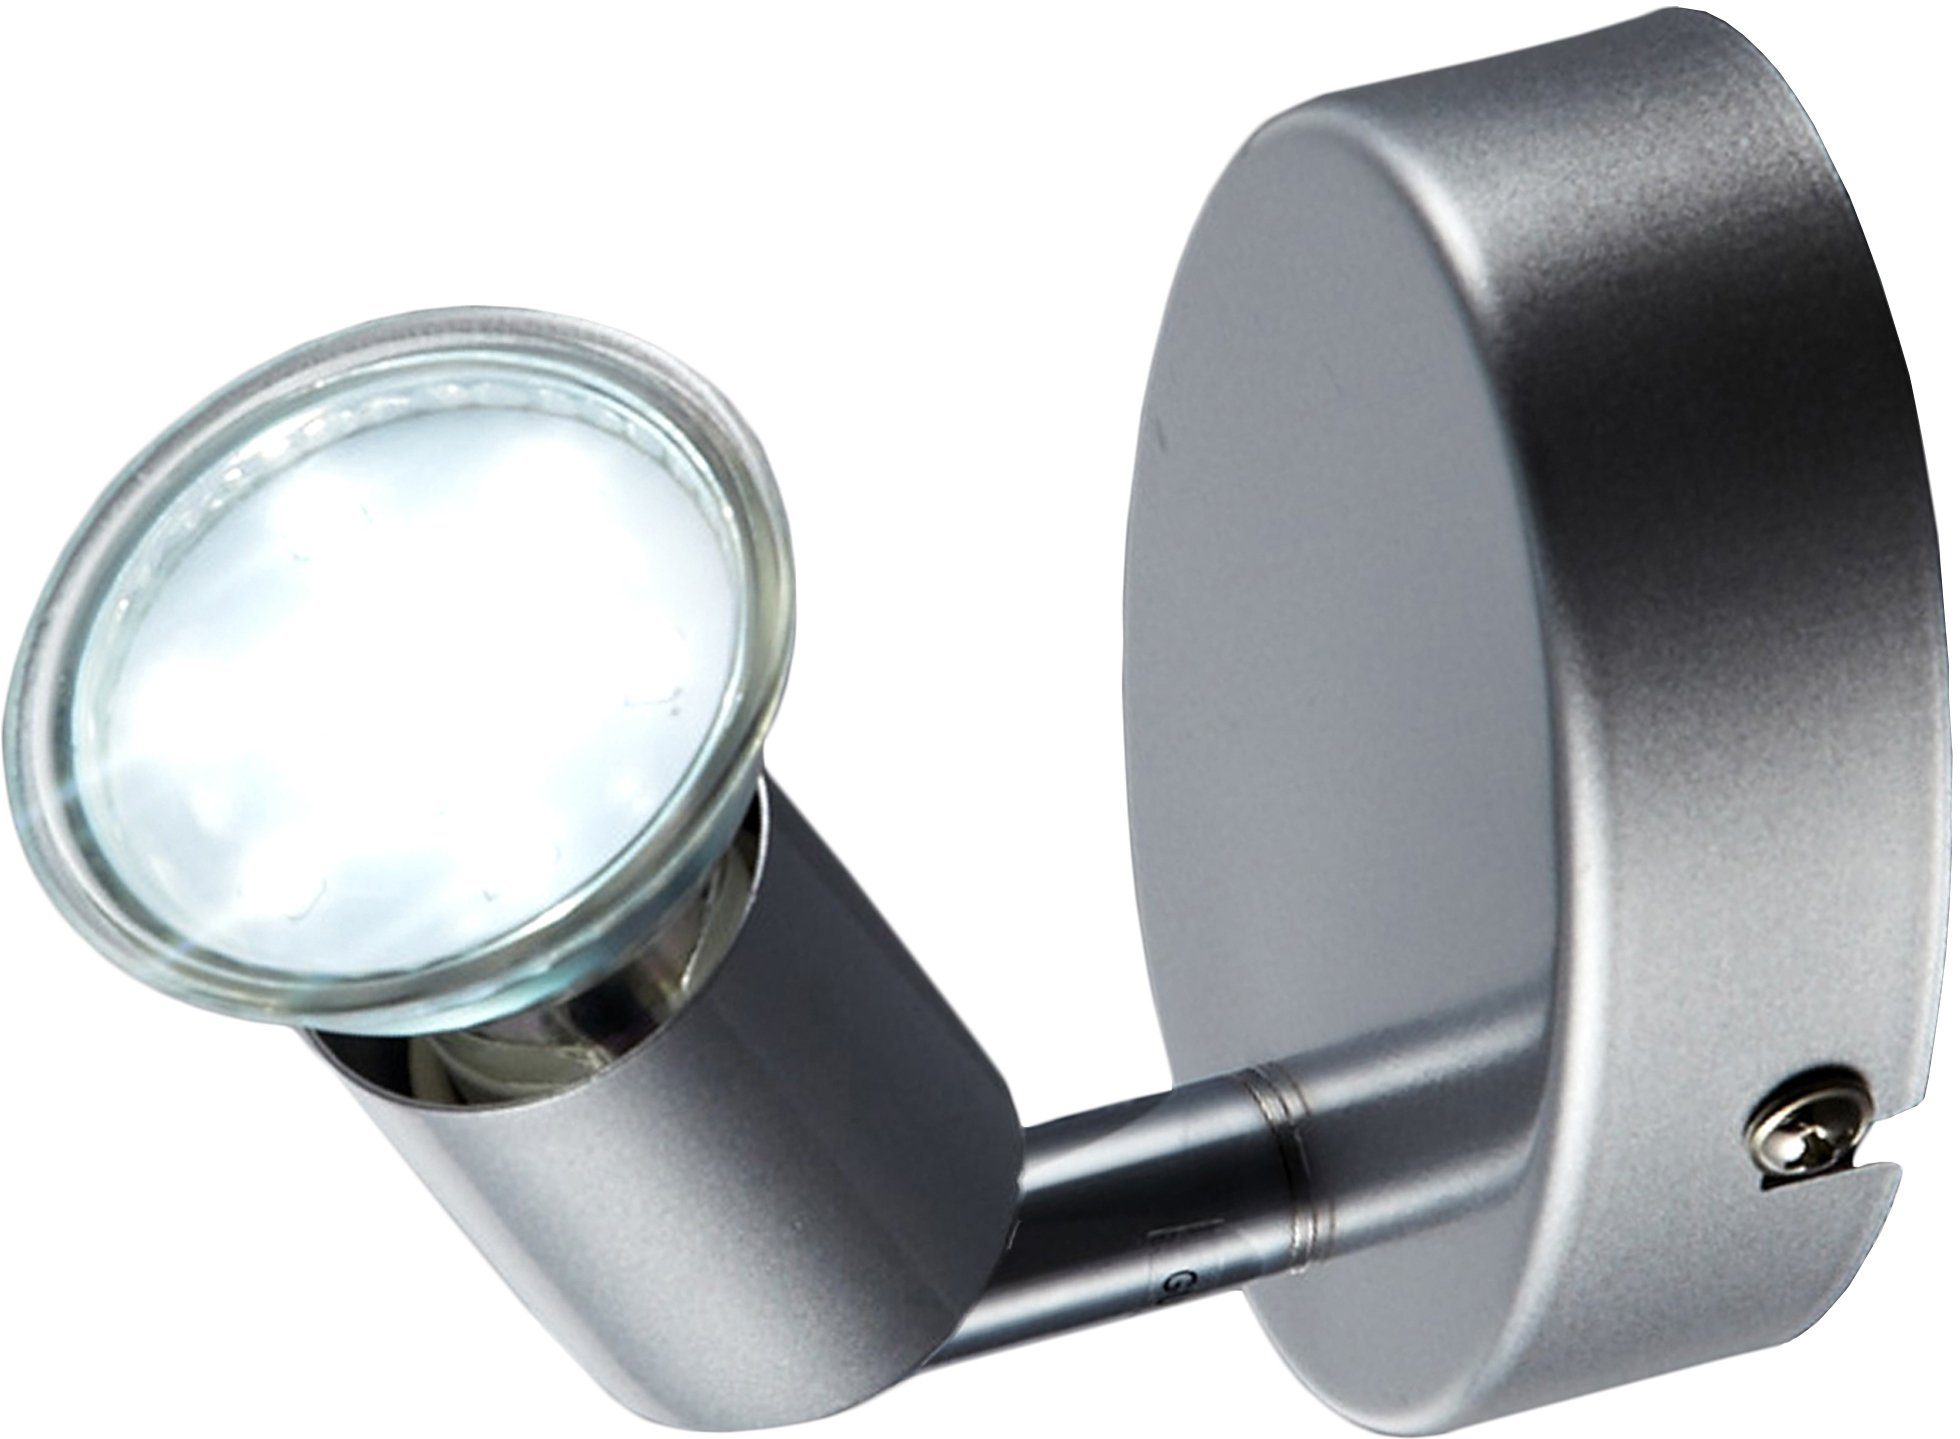 B.K.Licht LED GU10 Metall Deckenlampe Deckenleuchte, Wohnzimmer LED Decken-Spot Leuchte schwenkbar Warmweiß, wechselbar, LED